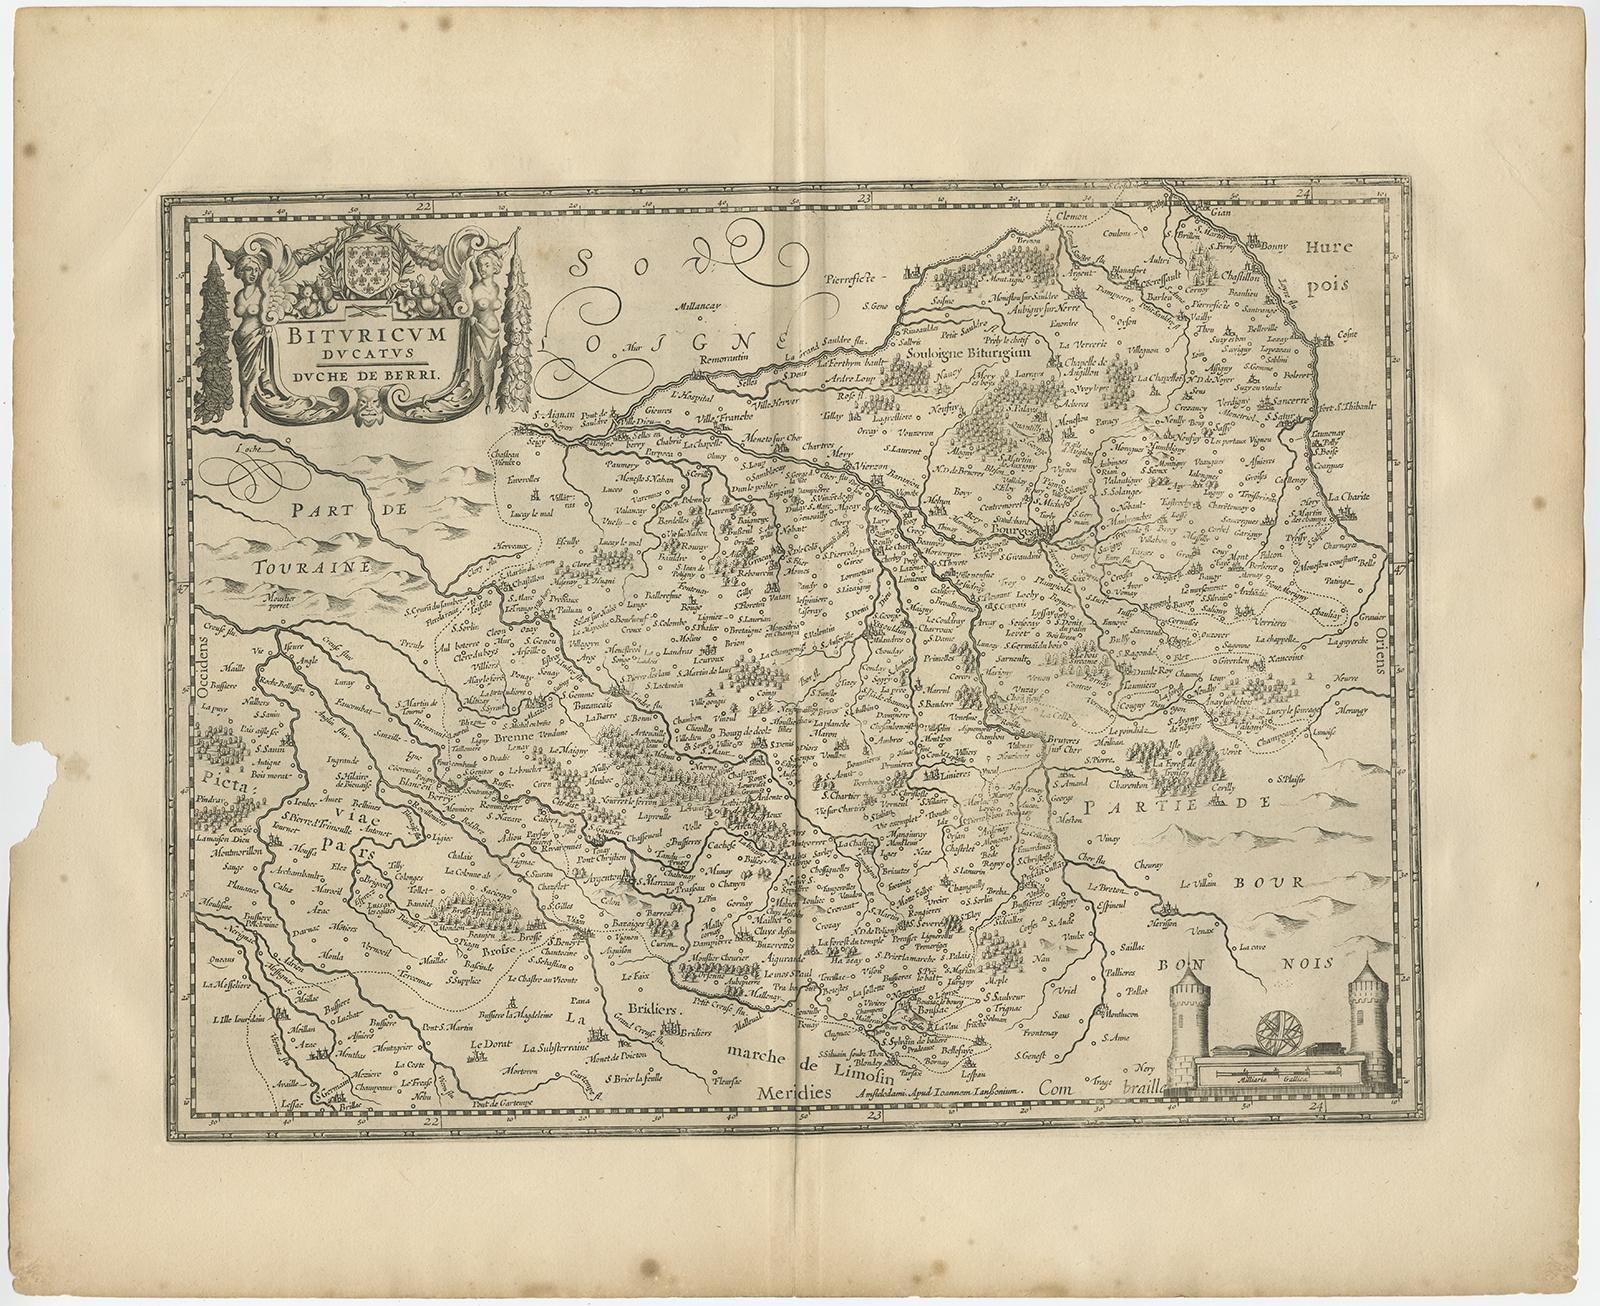 Antike Karte von Frankreich mit dem Titel 'Bituricum Ducatus - Duche de Berri'. 

Dekorative Karte der Region Berry, Frankreich. Das Berry ist eine Region in der Mitte Frankreichs. Es war eine französische Provinz, bis die Départements am 4. März